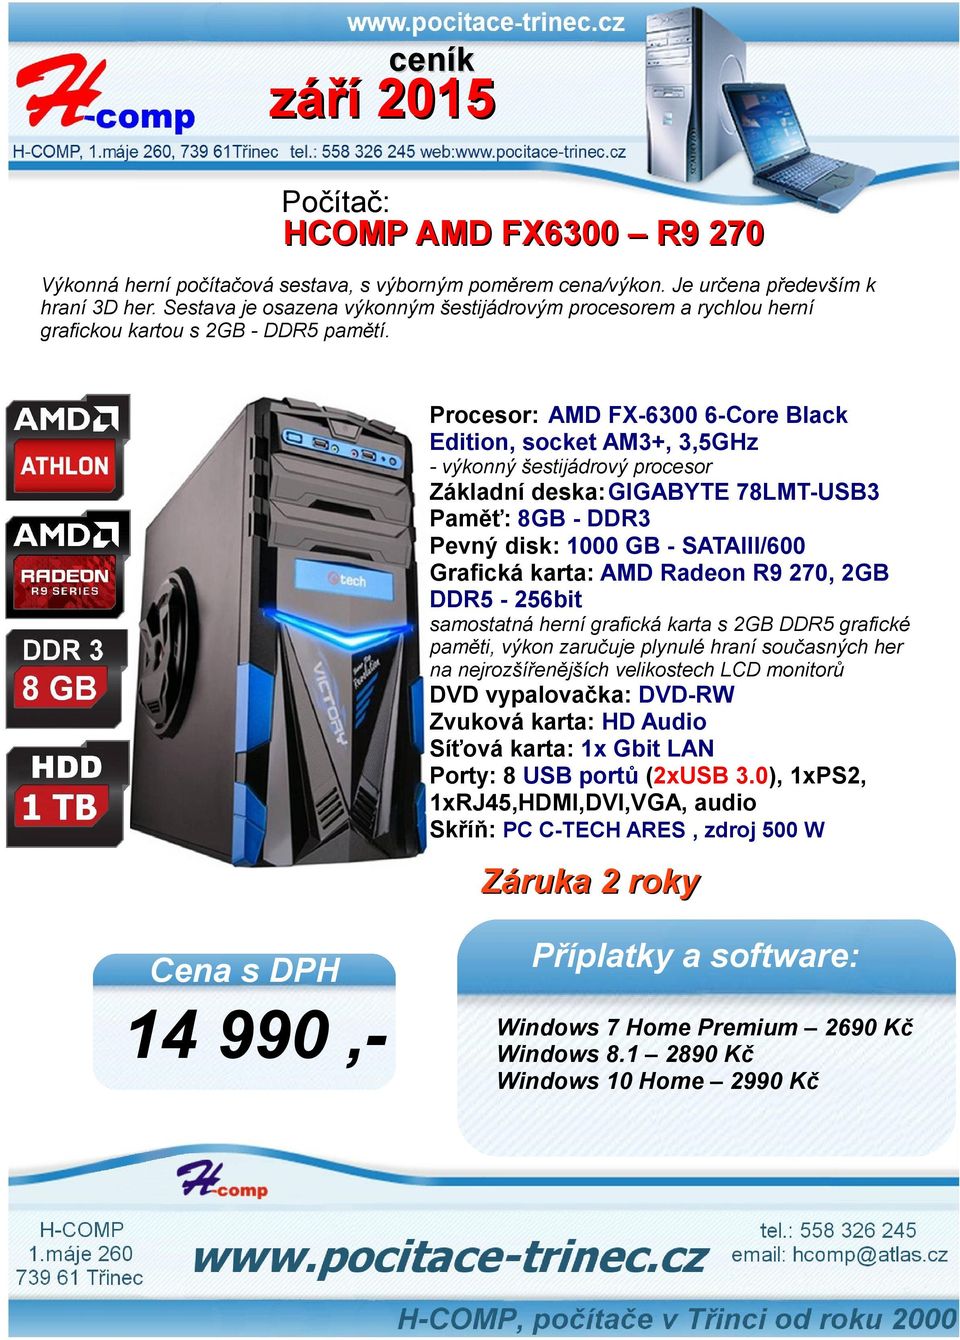 Procesor: AMD FX-6300 6-Core Black Edition, socket AM3+, 3,5GHz - výkonný šestijádrový procesor Základní deska:gigabyte 78LMT-USB3 Paměť: 8GB - DDR3 Pevný disk: 1000 GB -